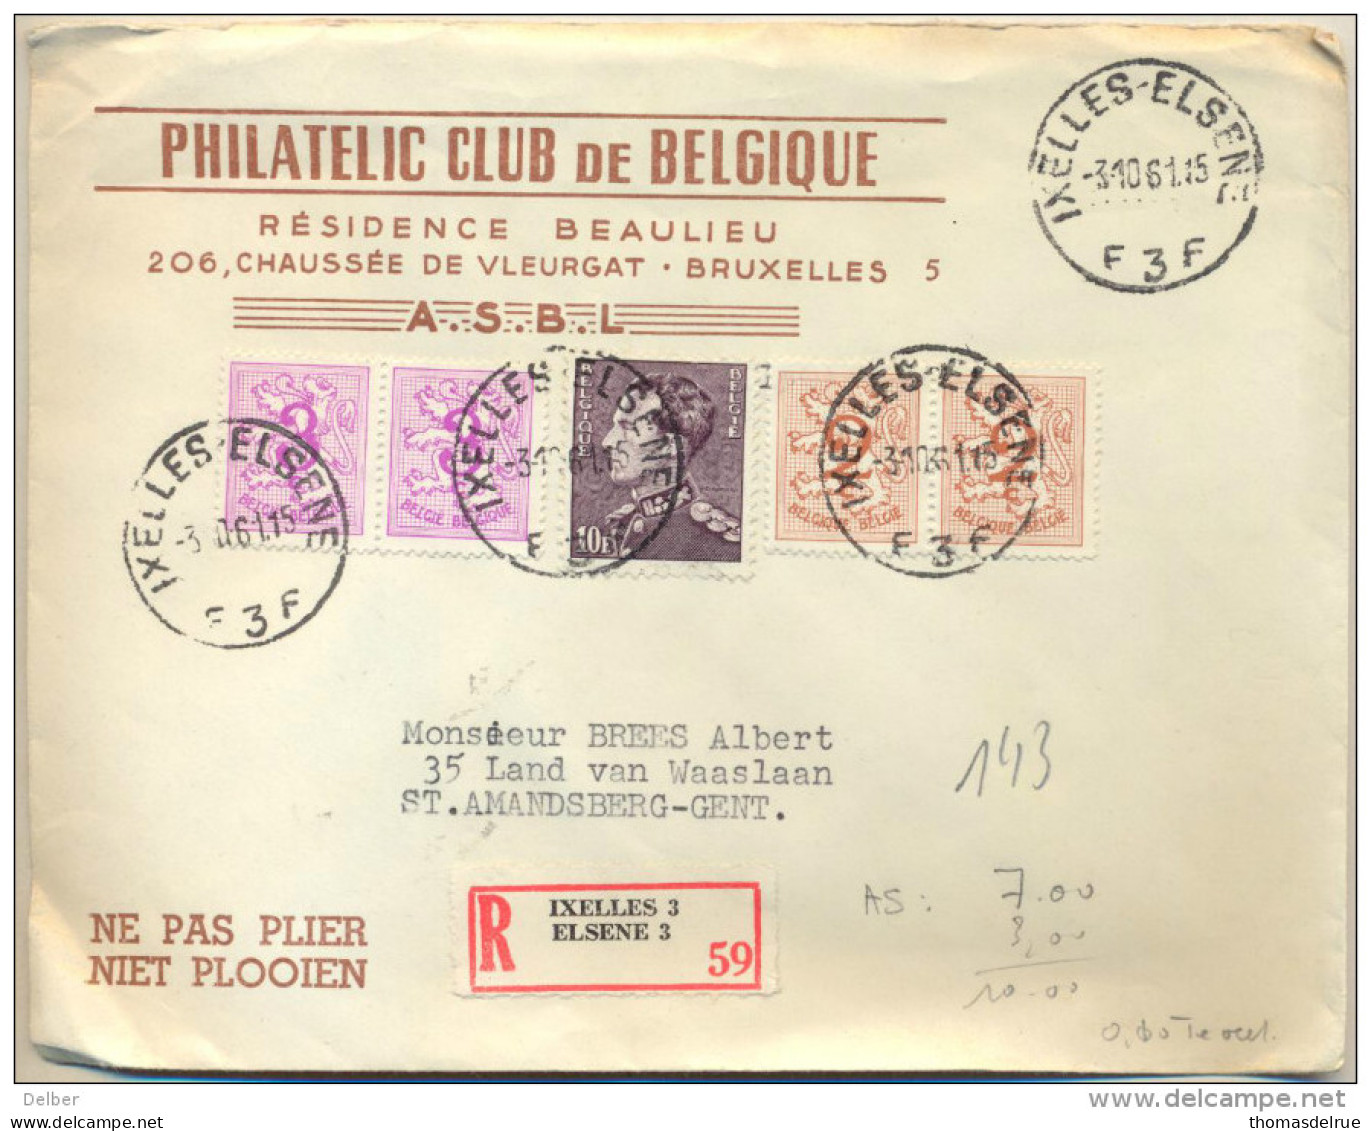 4cp-133: N° 1026A & B Bijgebruikt Op Een Aangetekende Brief... Werk Van De A.S.B.L. - 1951-1975 Heraldic Lion